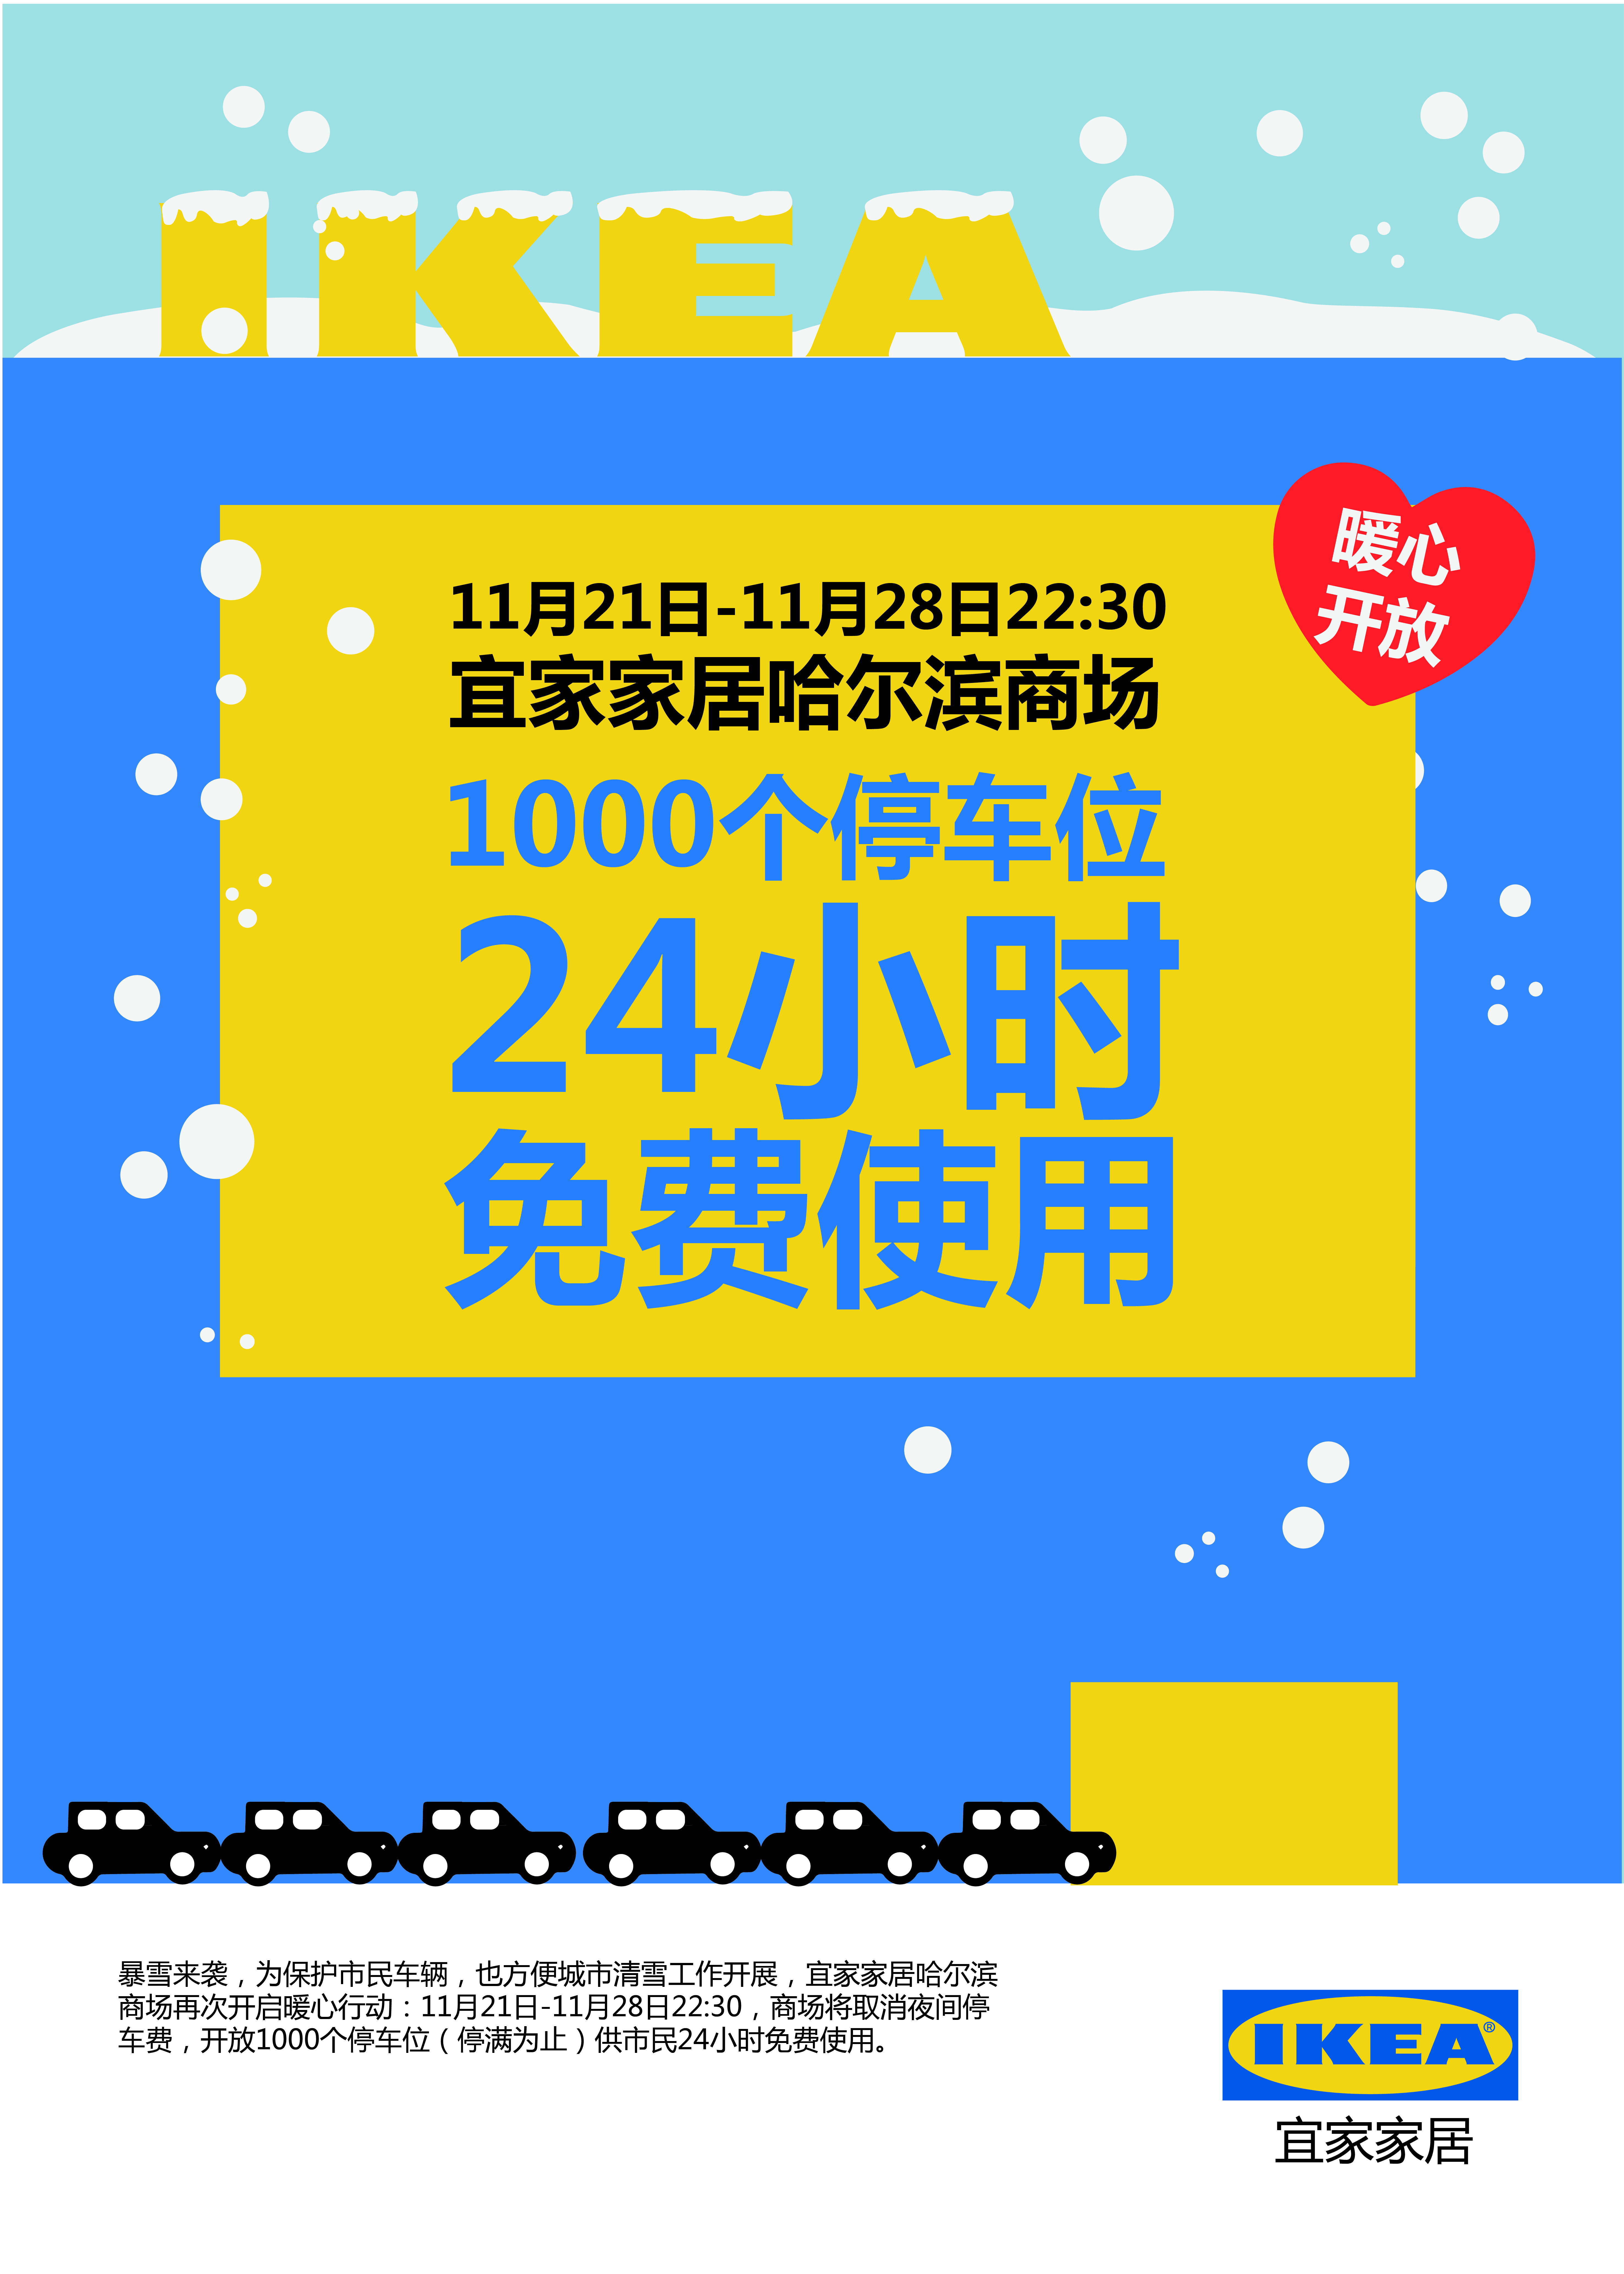 哈尔滨市民可以到这里免费过夜停车，宜家家居哈尔滨商场免费开放1000个停车位